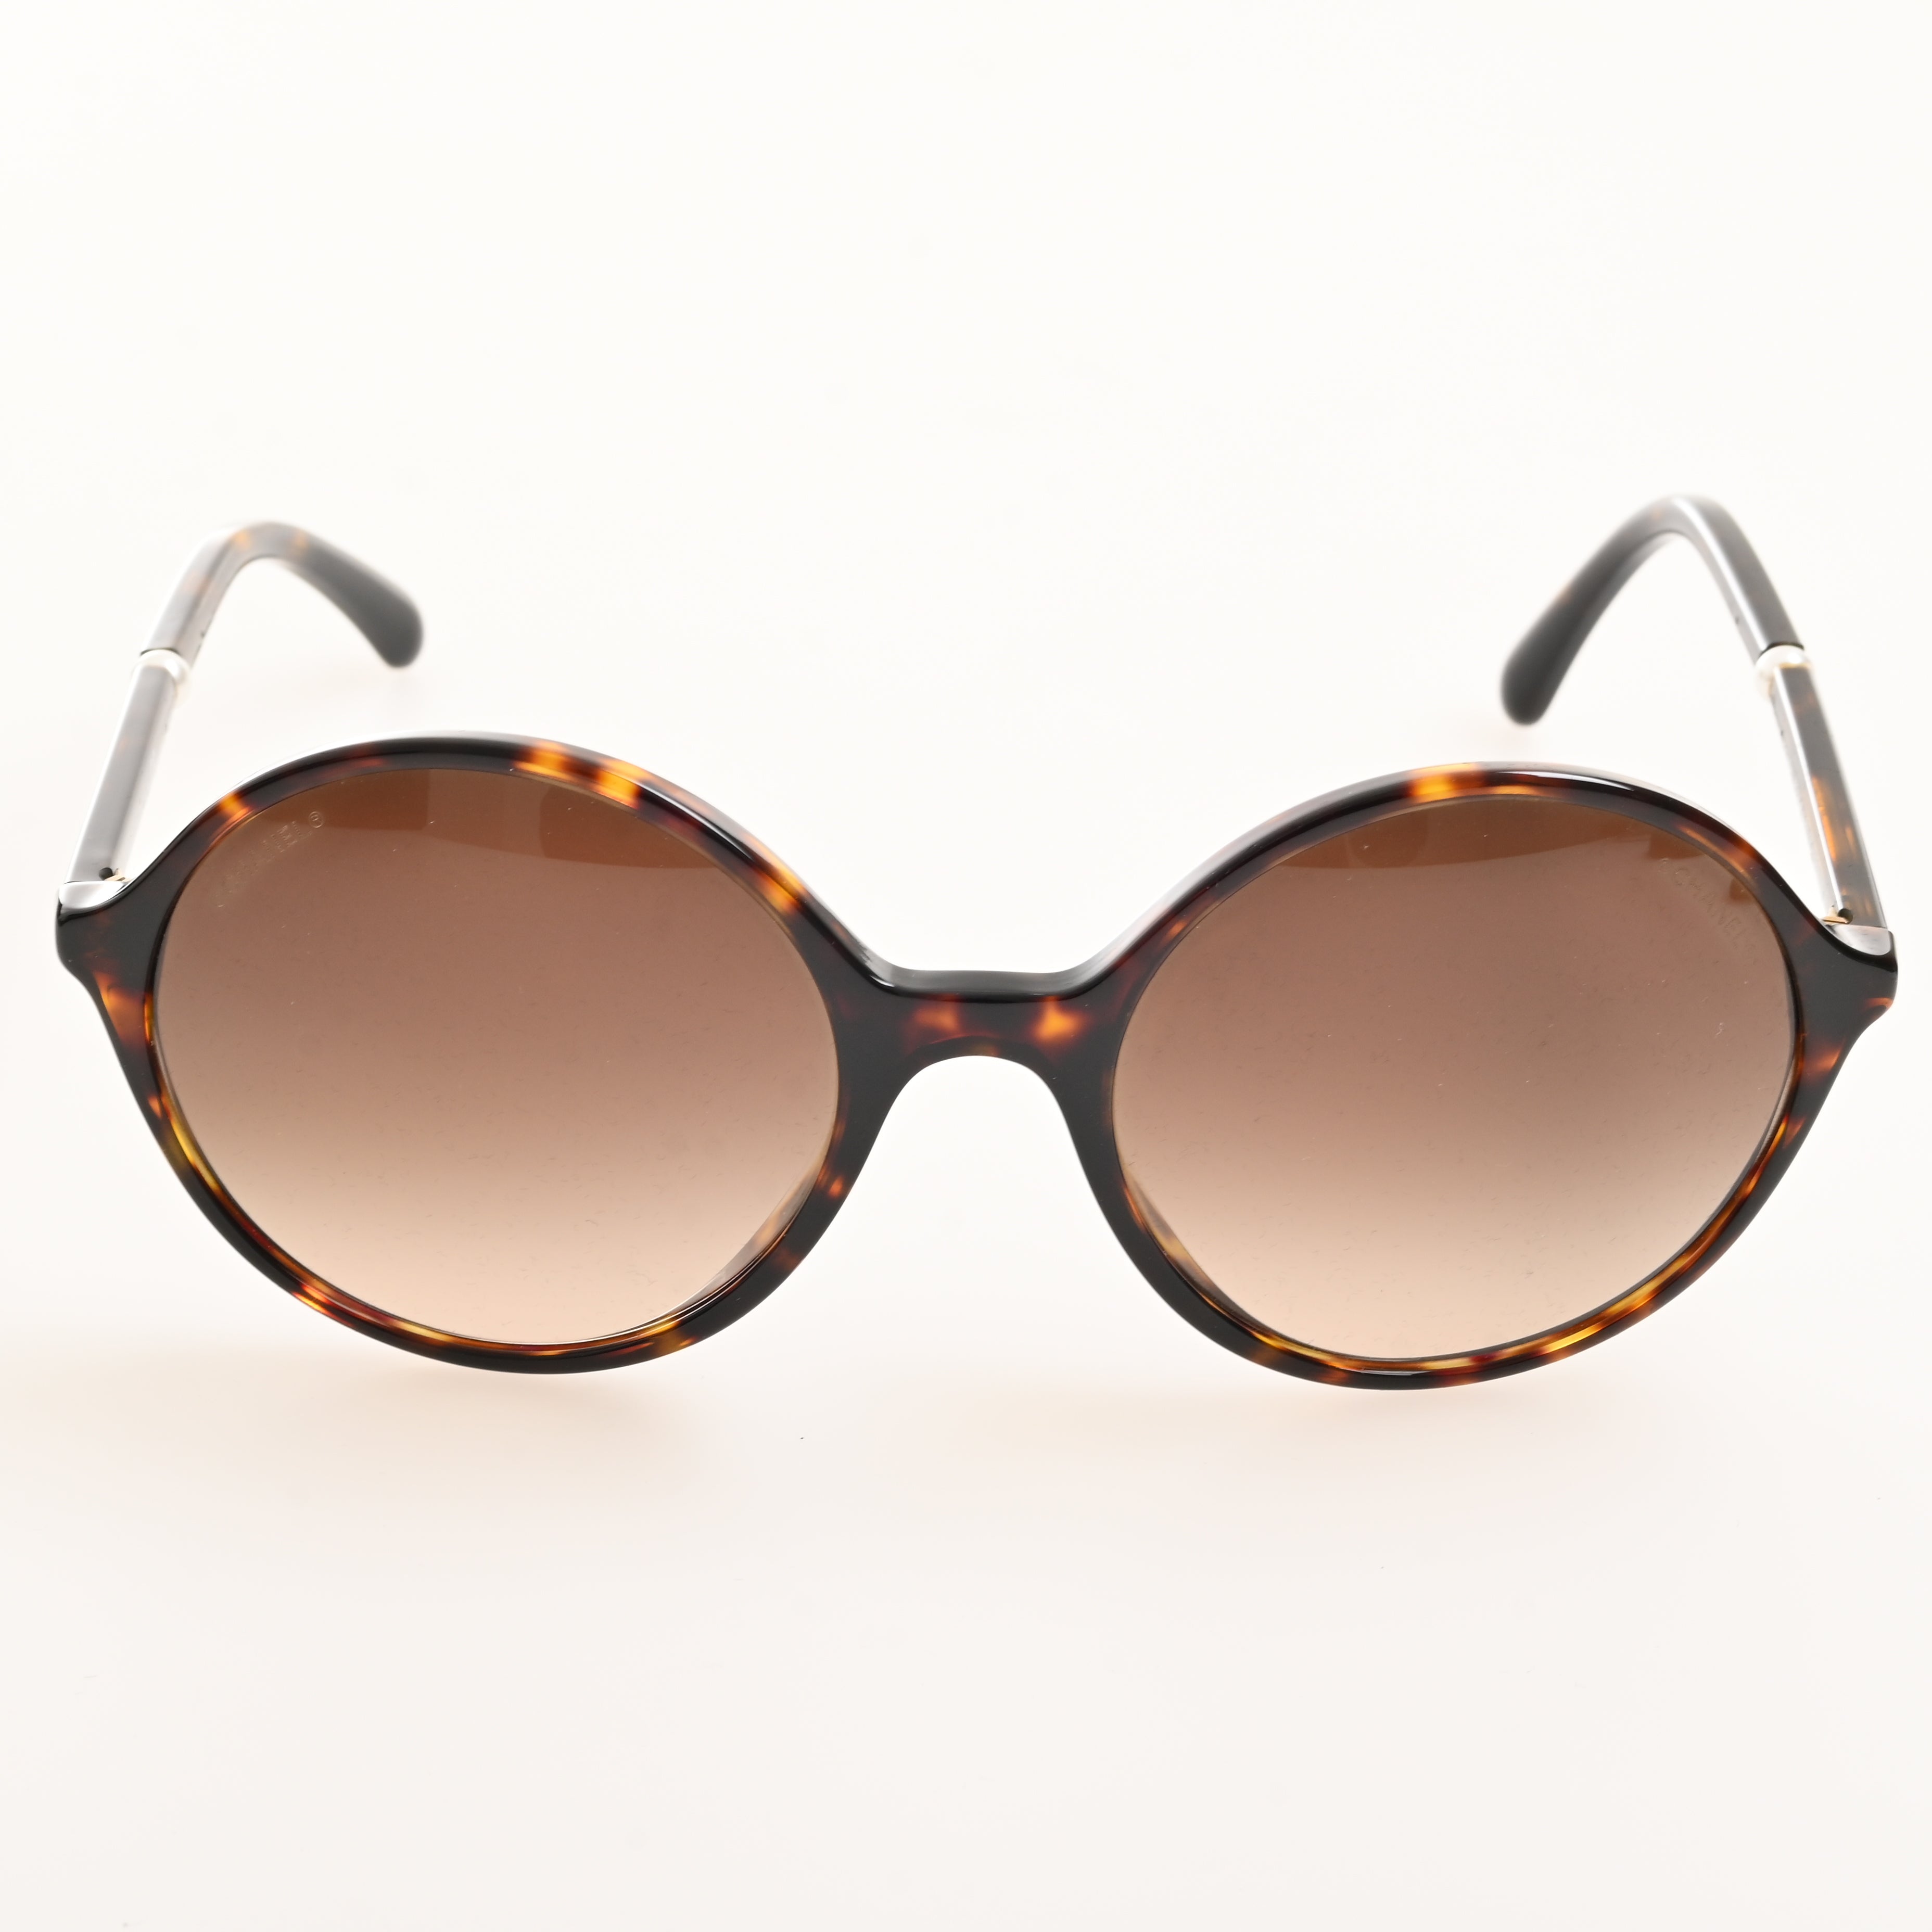 Chanel sunglasses round frame tortoiseshell 5391-HA box/case – co&co